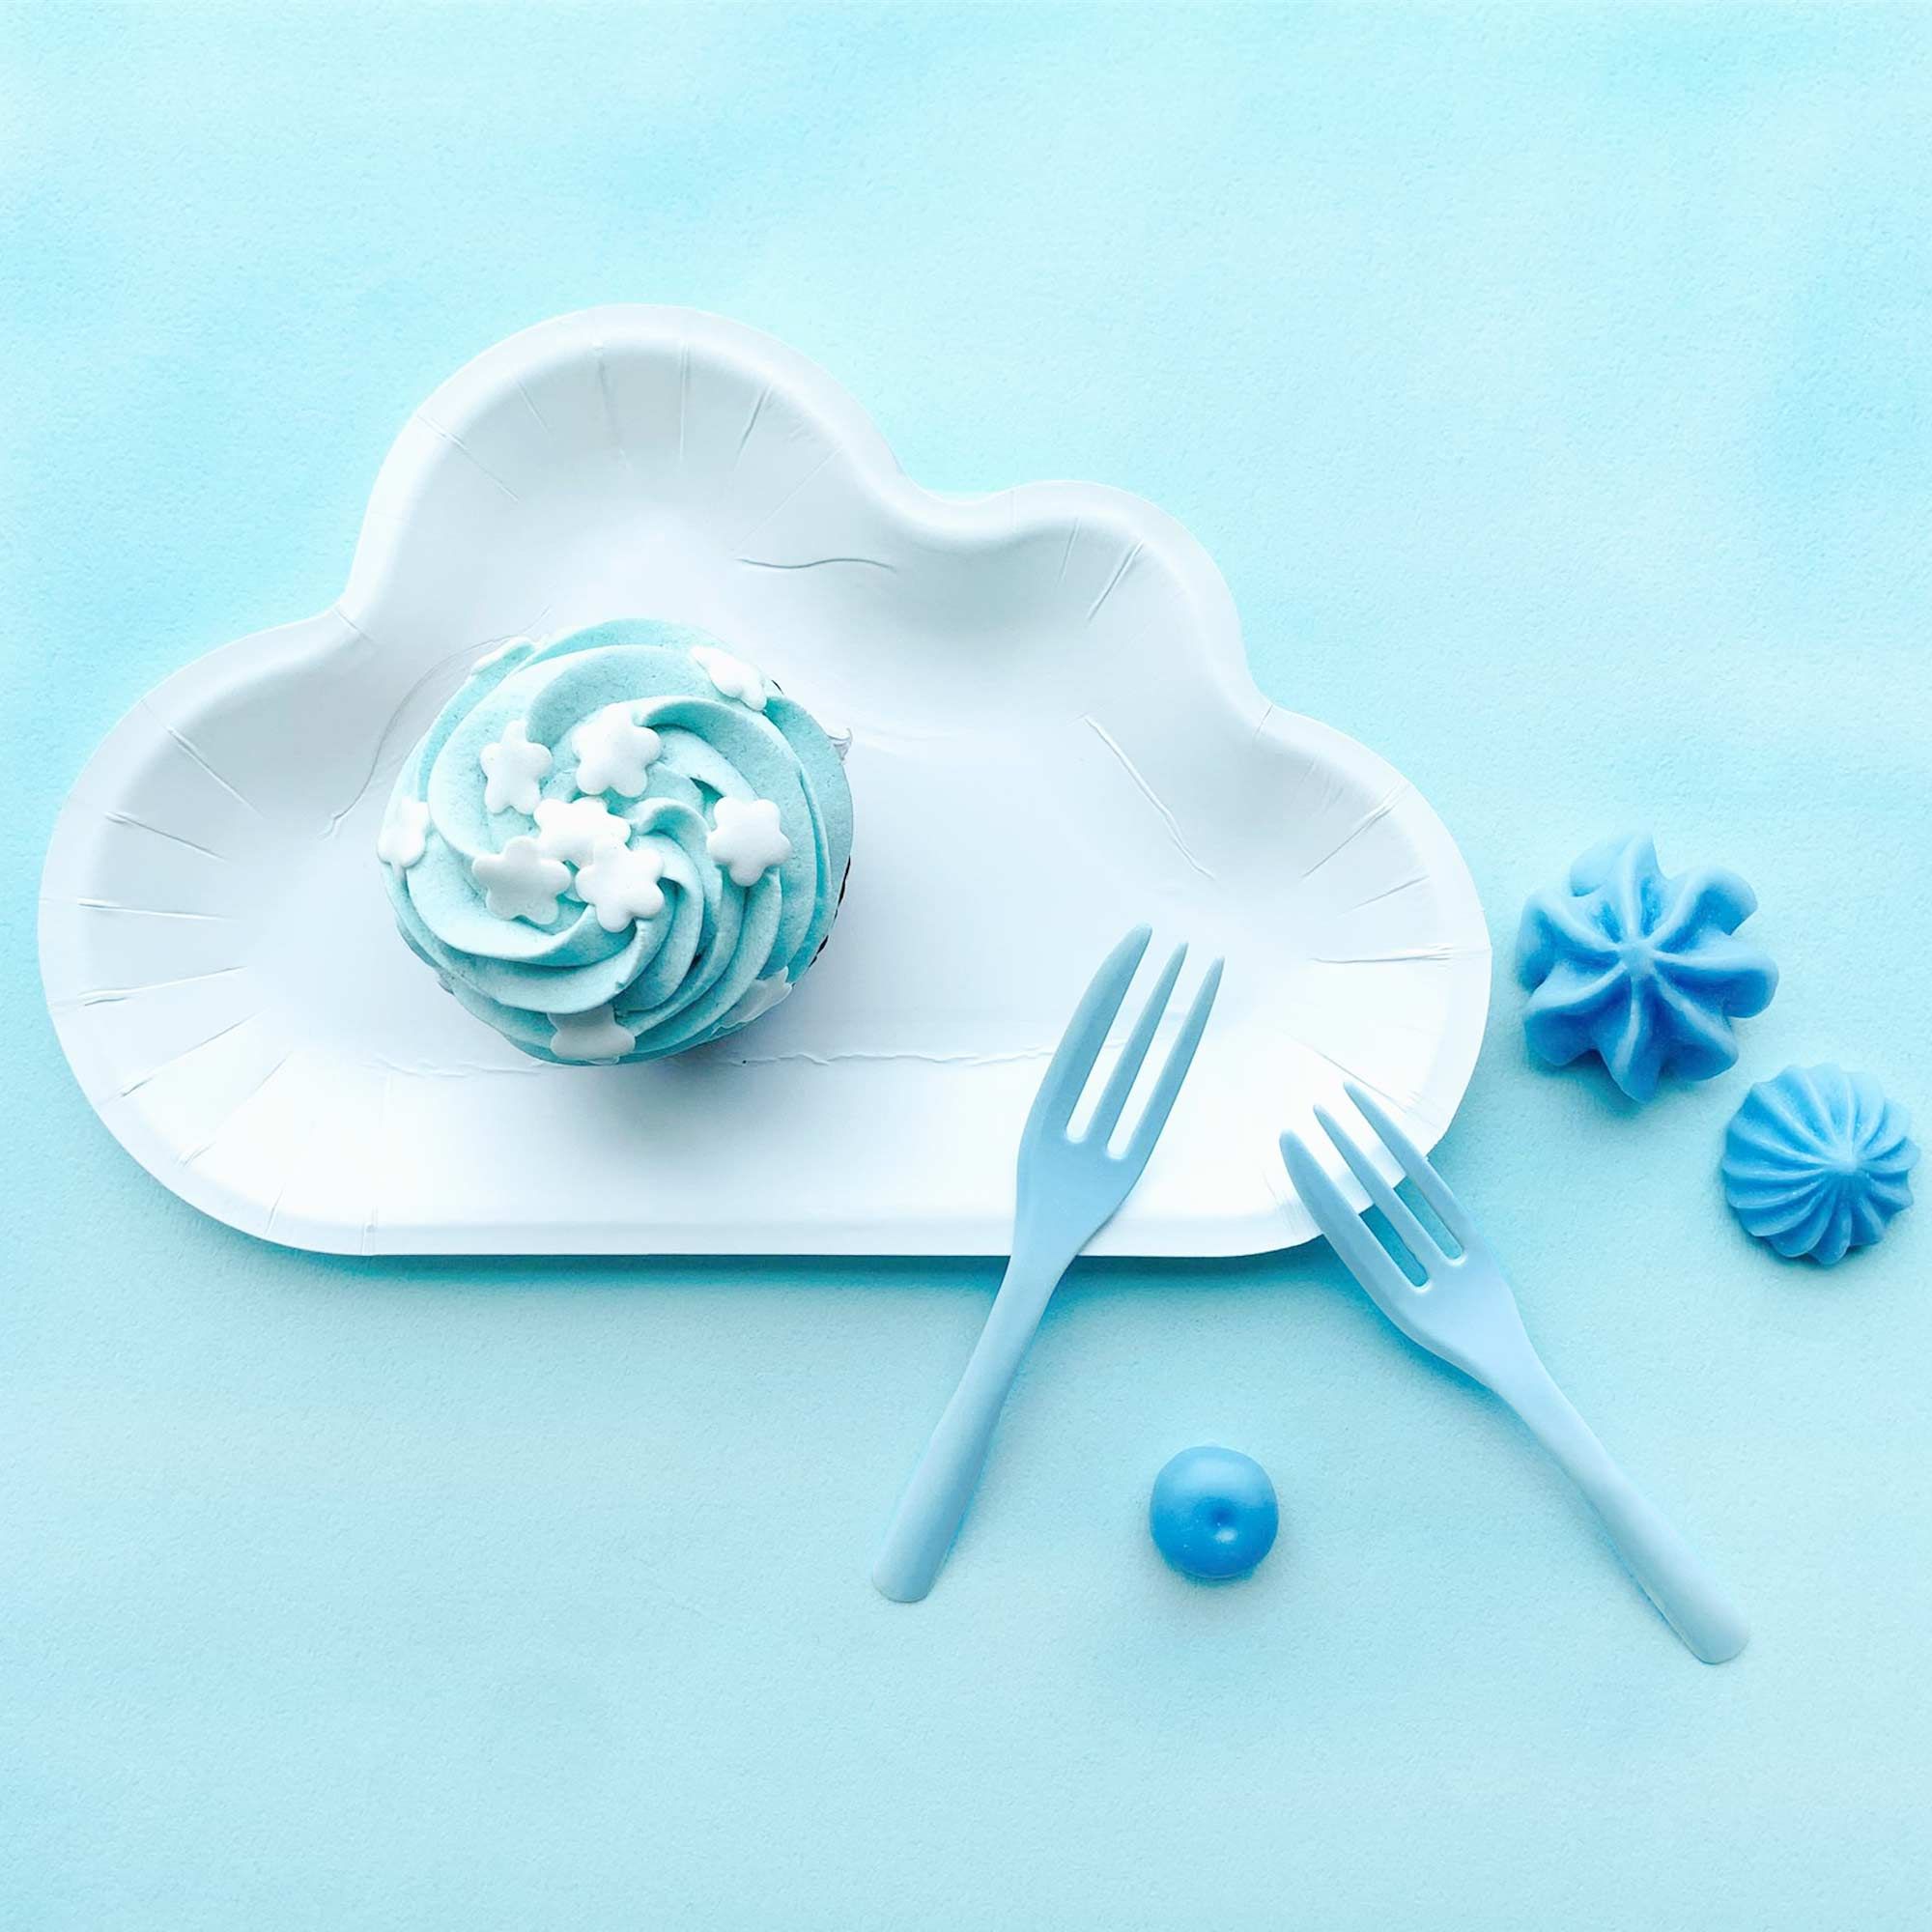 Белая облачная тарелка в сочетании с голубыми тортовыми вилками создает атмосферу, напоминающую голубое небо с пушистыми облаками.